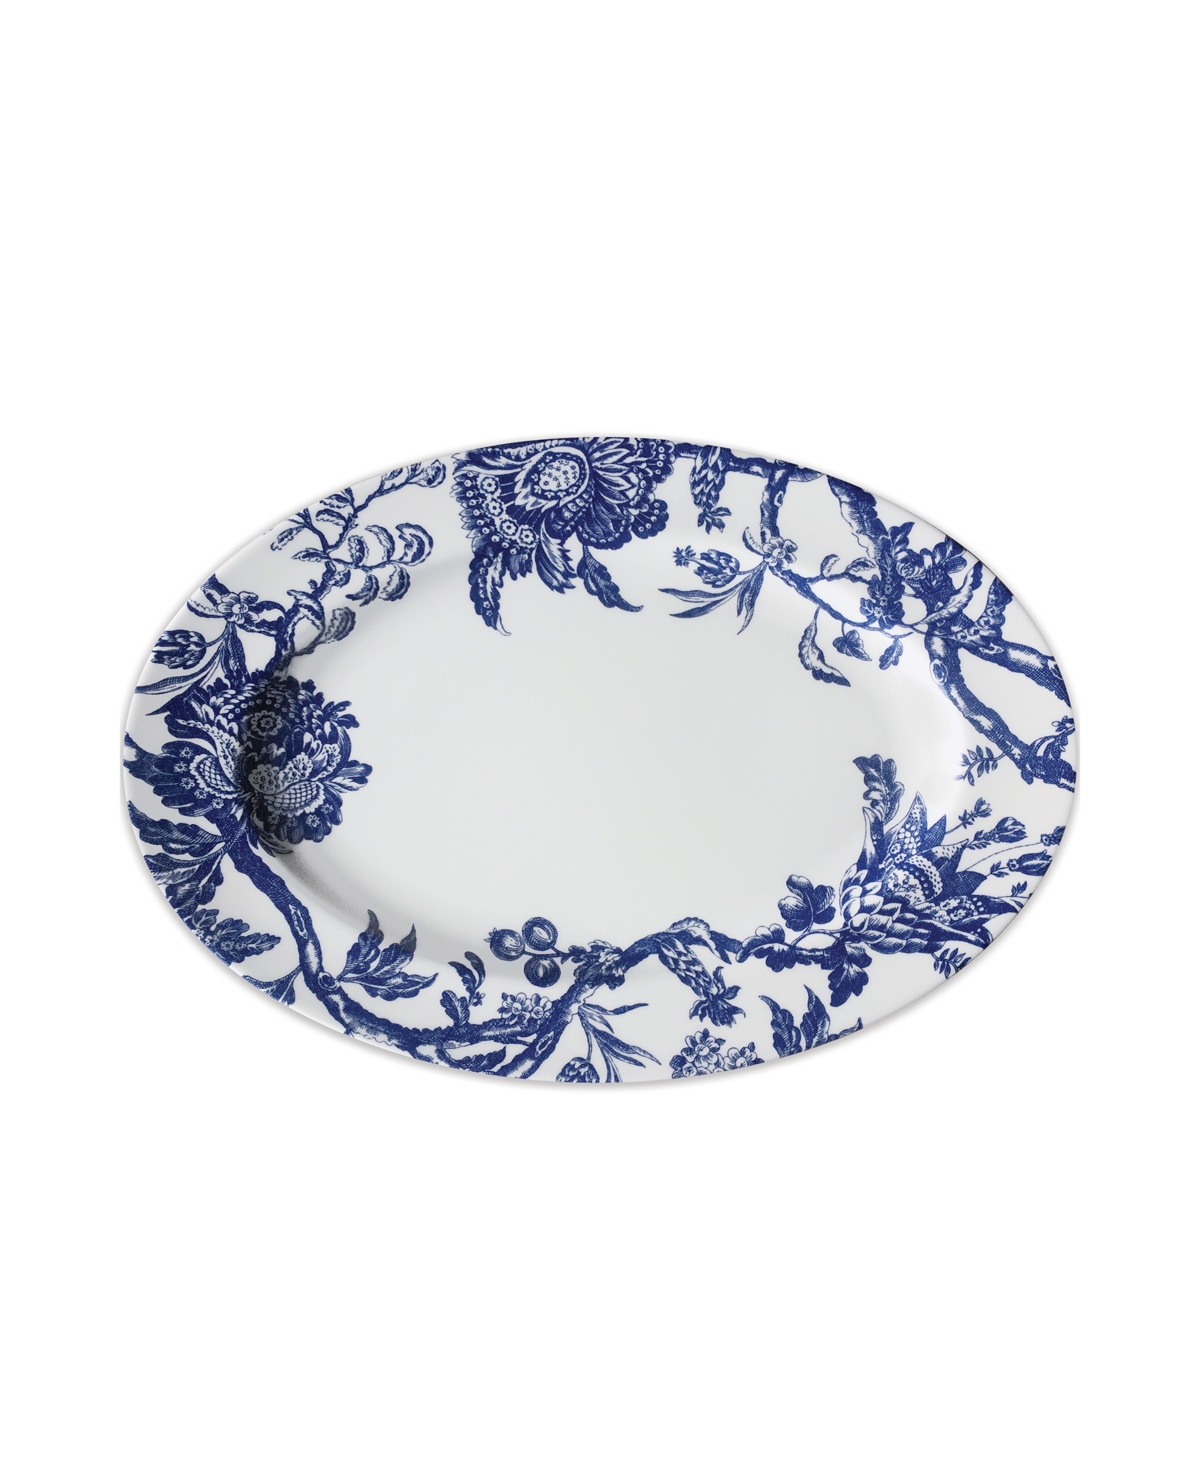 Caskata Arcadia Large Rimmed Oval Platter In Blue On White